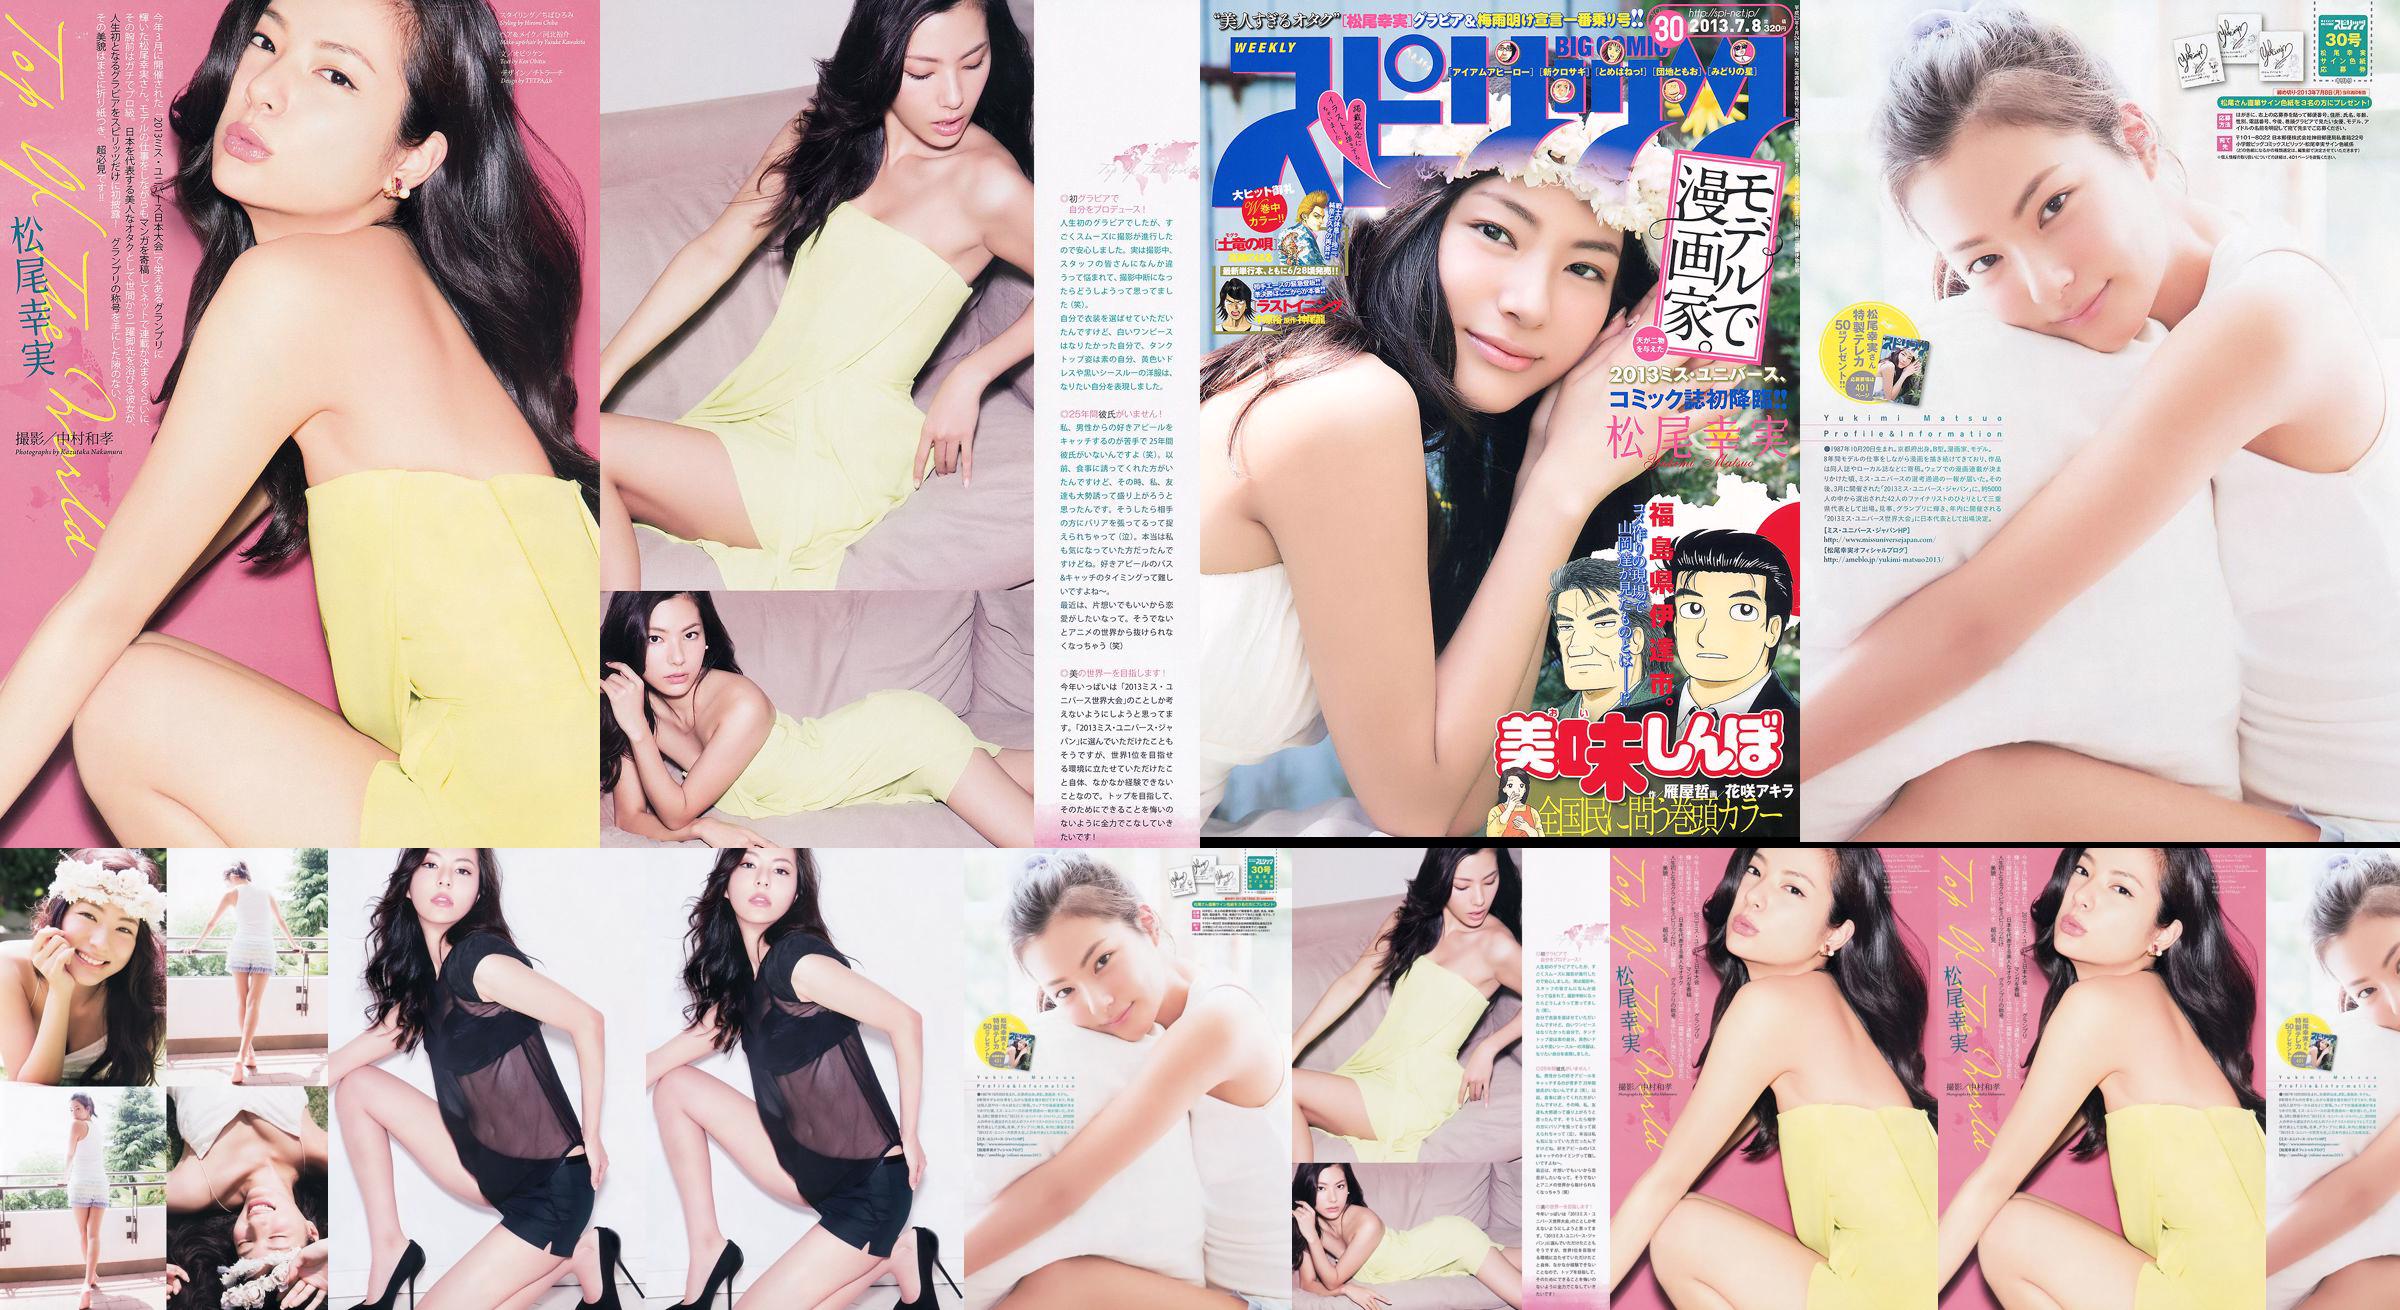 [Weekly Big Comic Spirits] Komi Matsuo 2013 No.30 Photo Magazine No.9eb11a Page 1